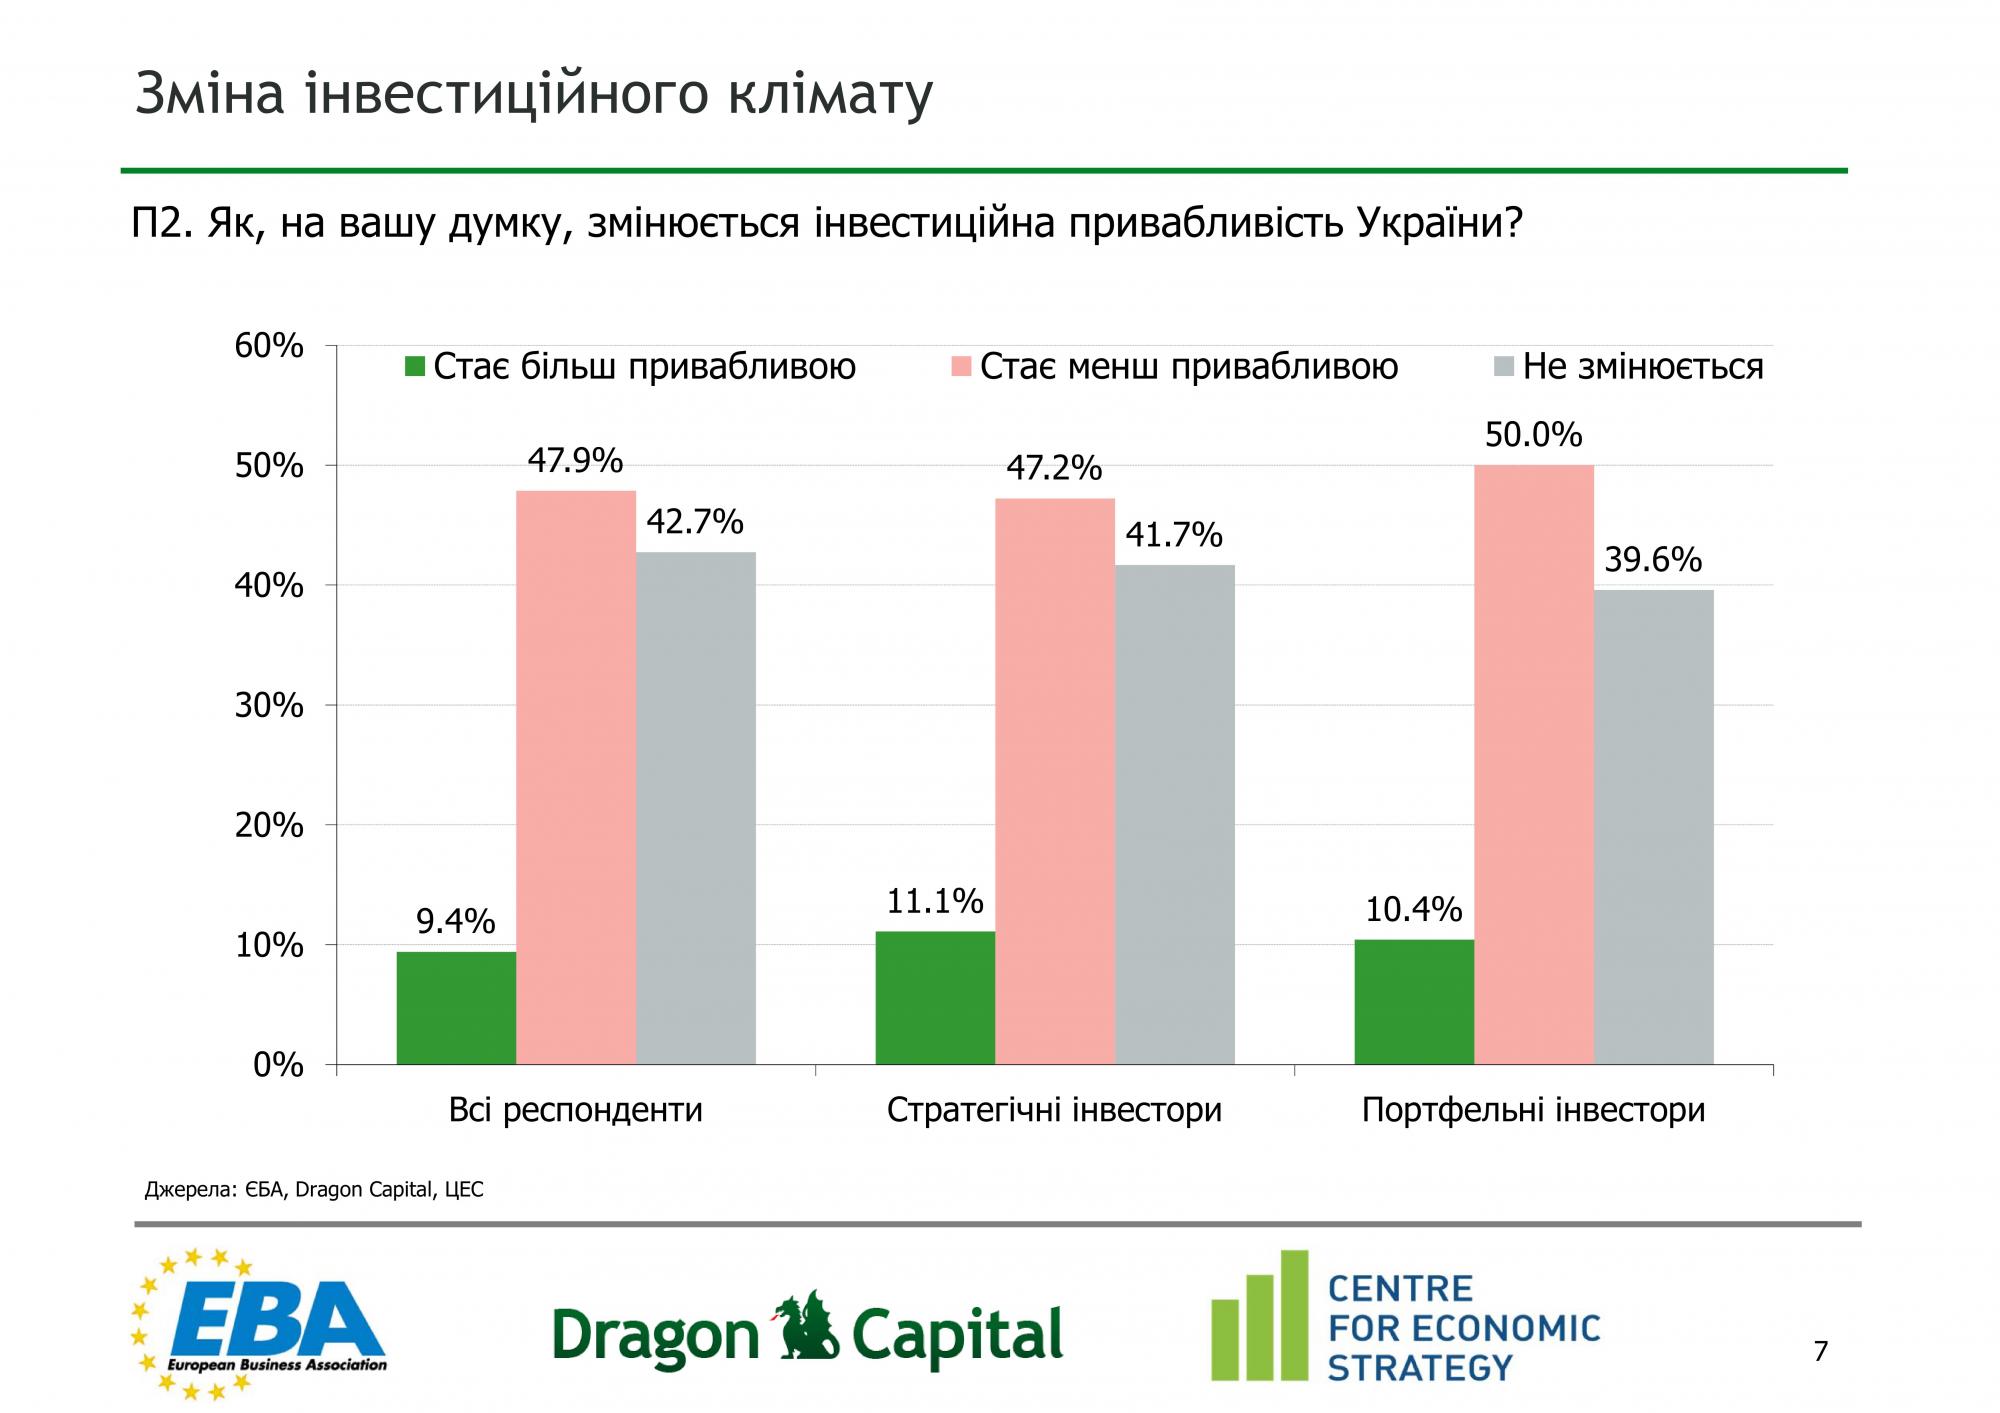 Половина иностранных компаний заметили ухудшение инвестклимата в Украине